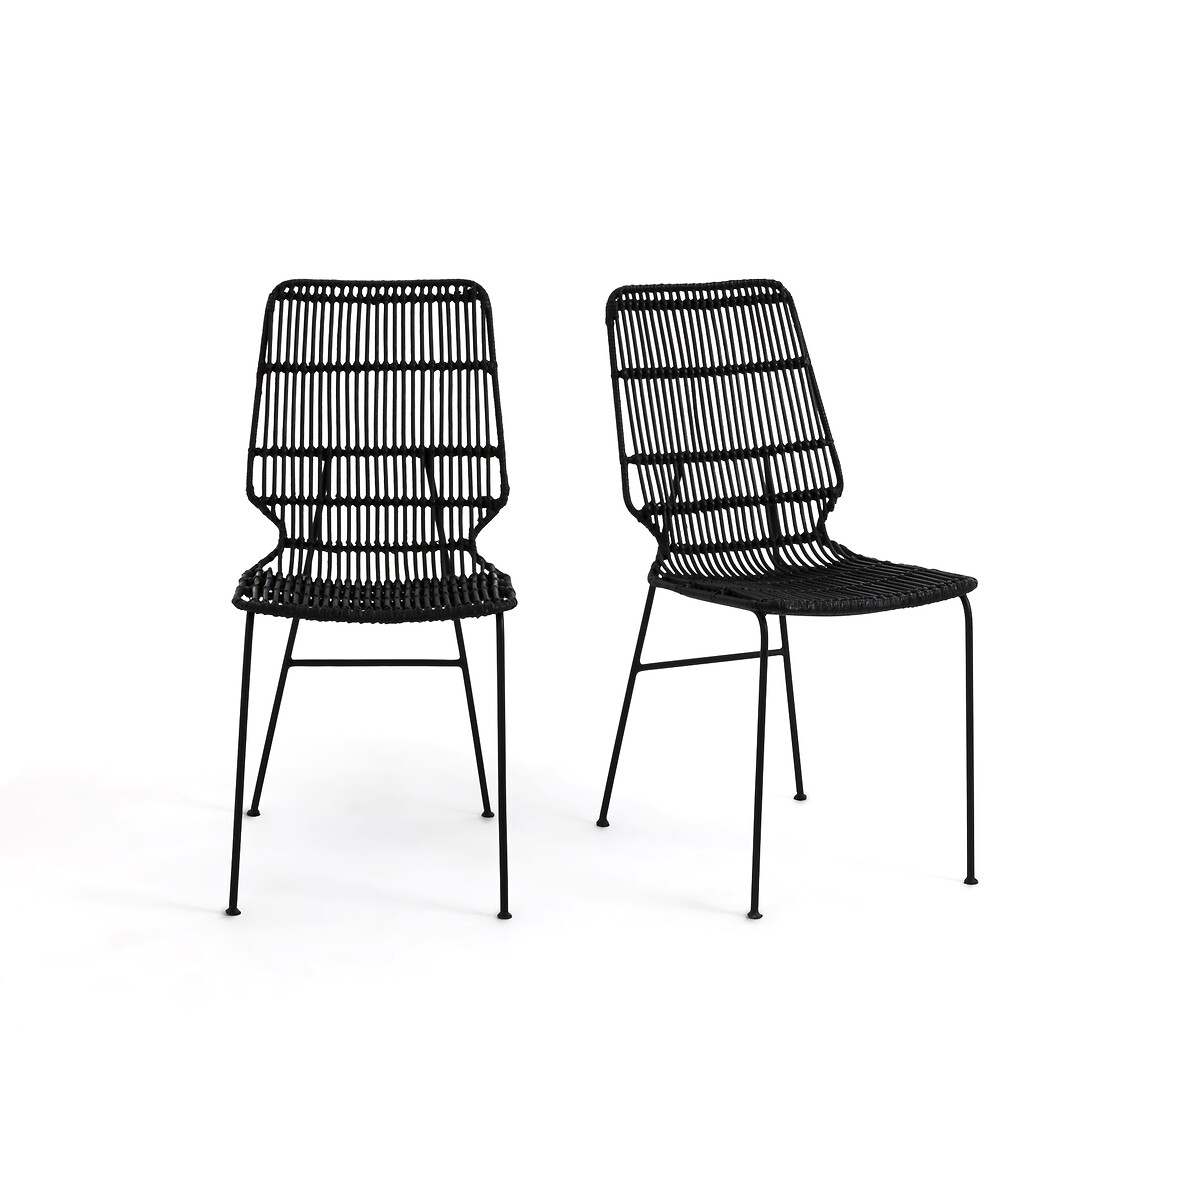 2 стула металлических плетеных Malu комплект единый размер черный 2 стула металлических плетеных malu комплект единый размер черный